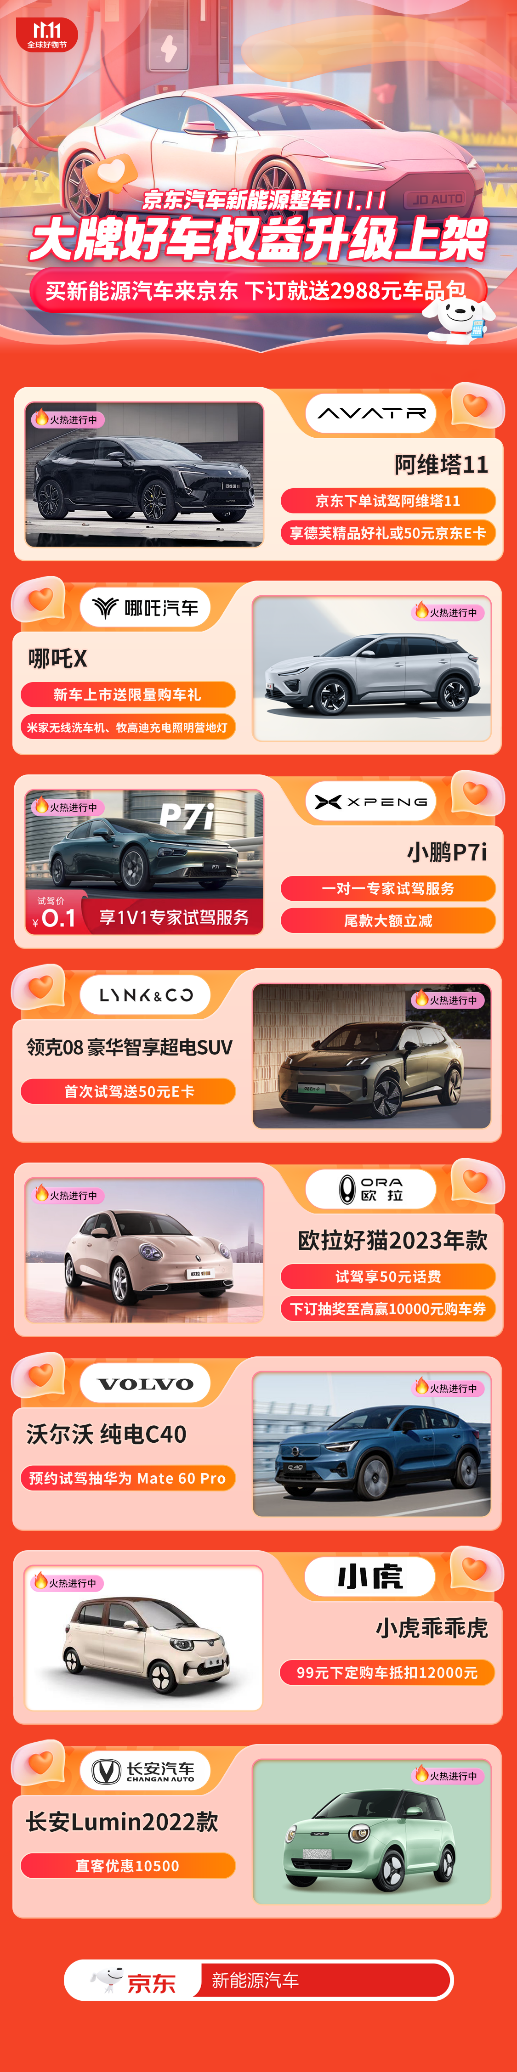 京东汽车11.11正式开启 下订新能源车即送2988元车品包  第1张